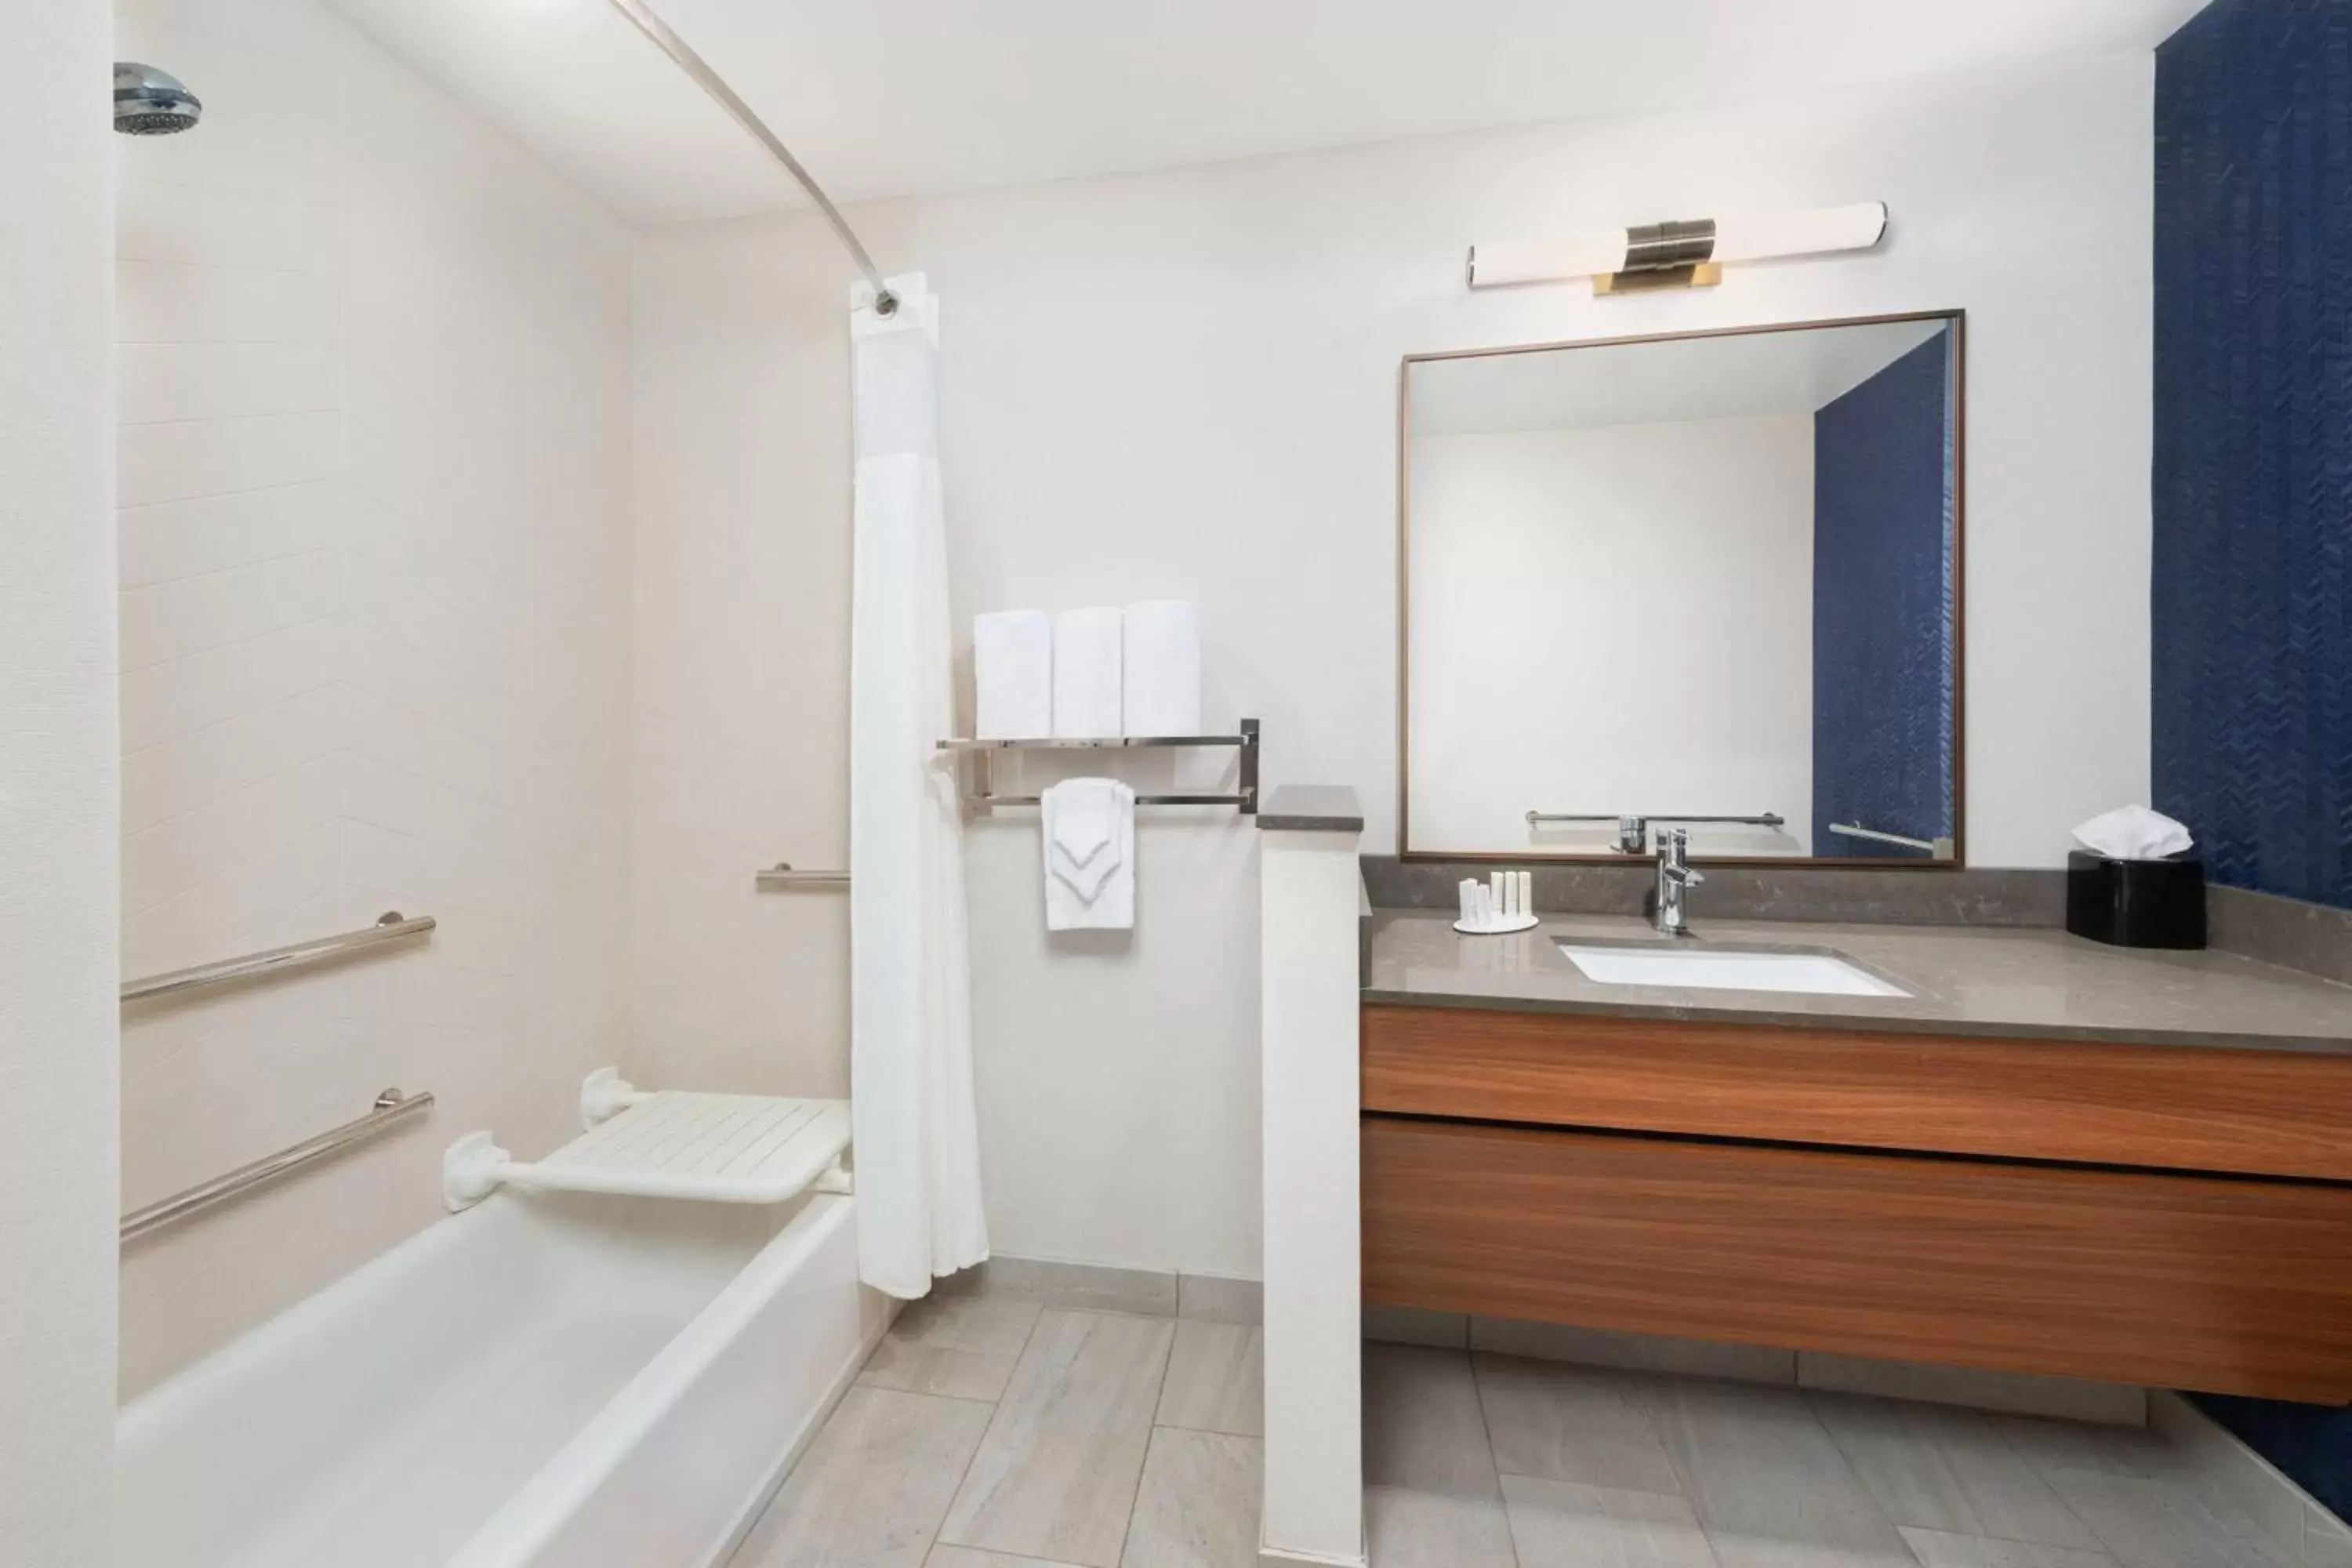 Bathroom in Fairfield Inn & Suites Santee